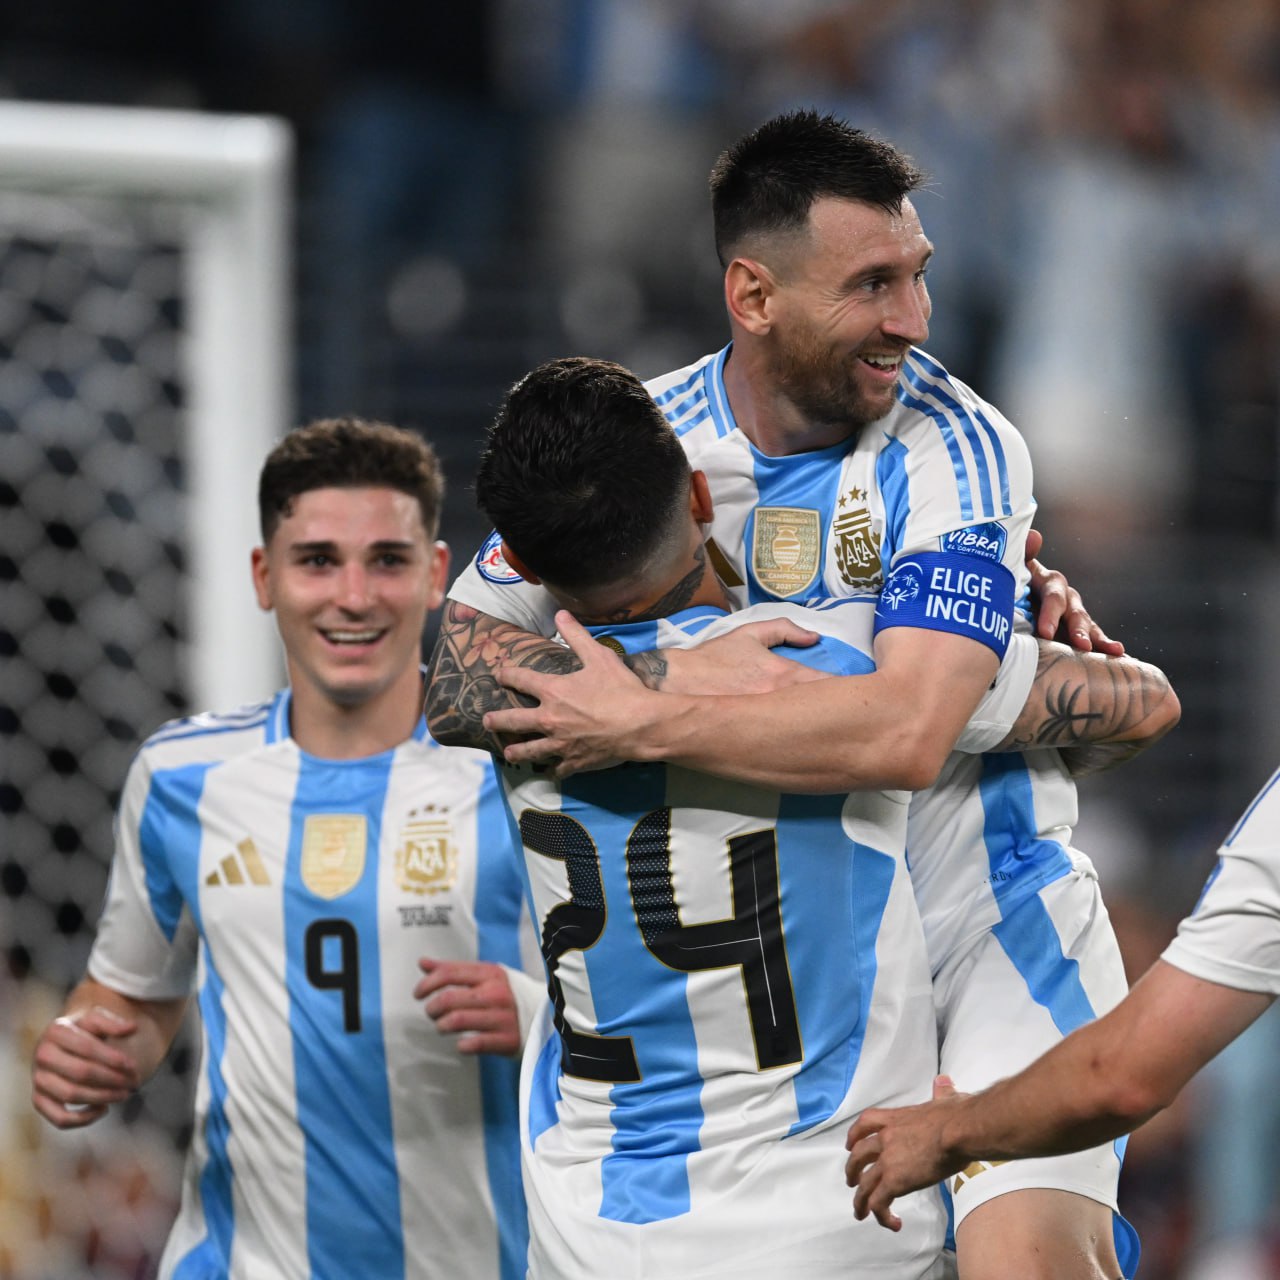 Аргентина идет к защите титула, а у Месси — первый гол на турнире    Обзор полуфинала Копы уже готов, осталось его посмотреть!